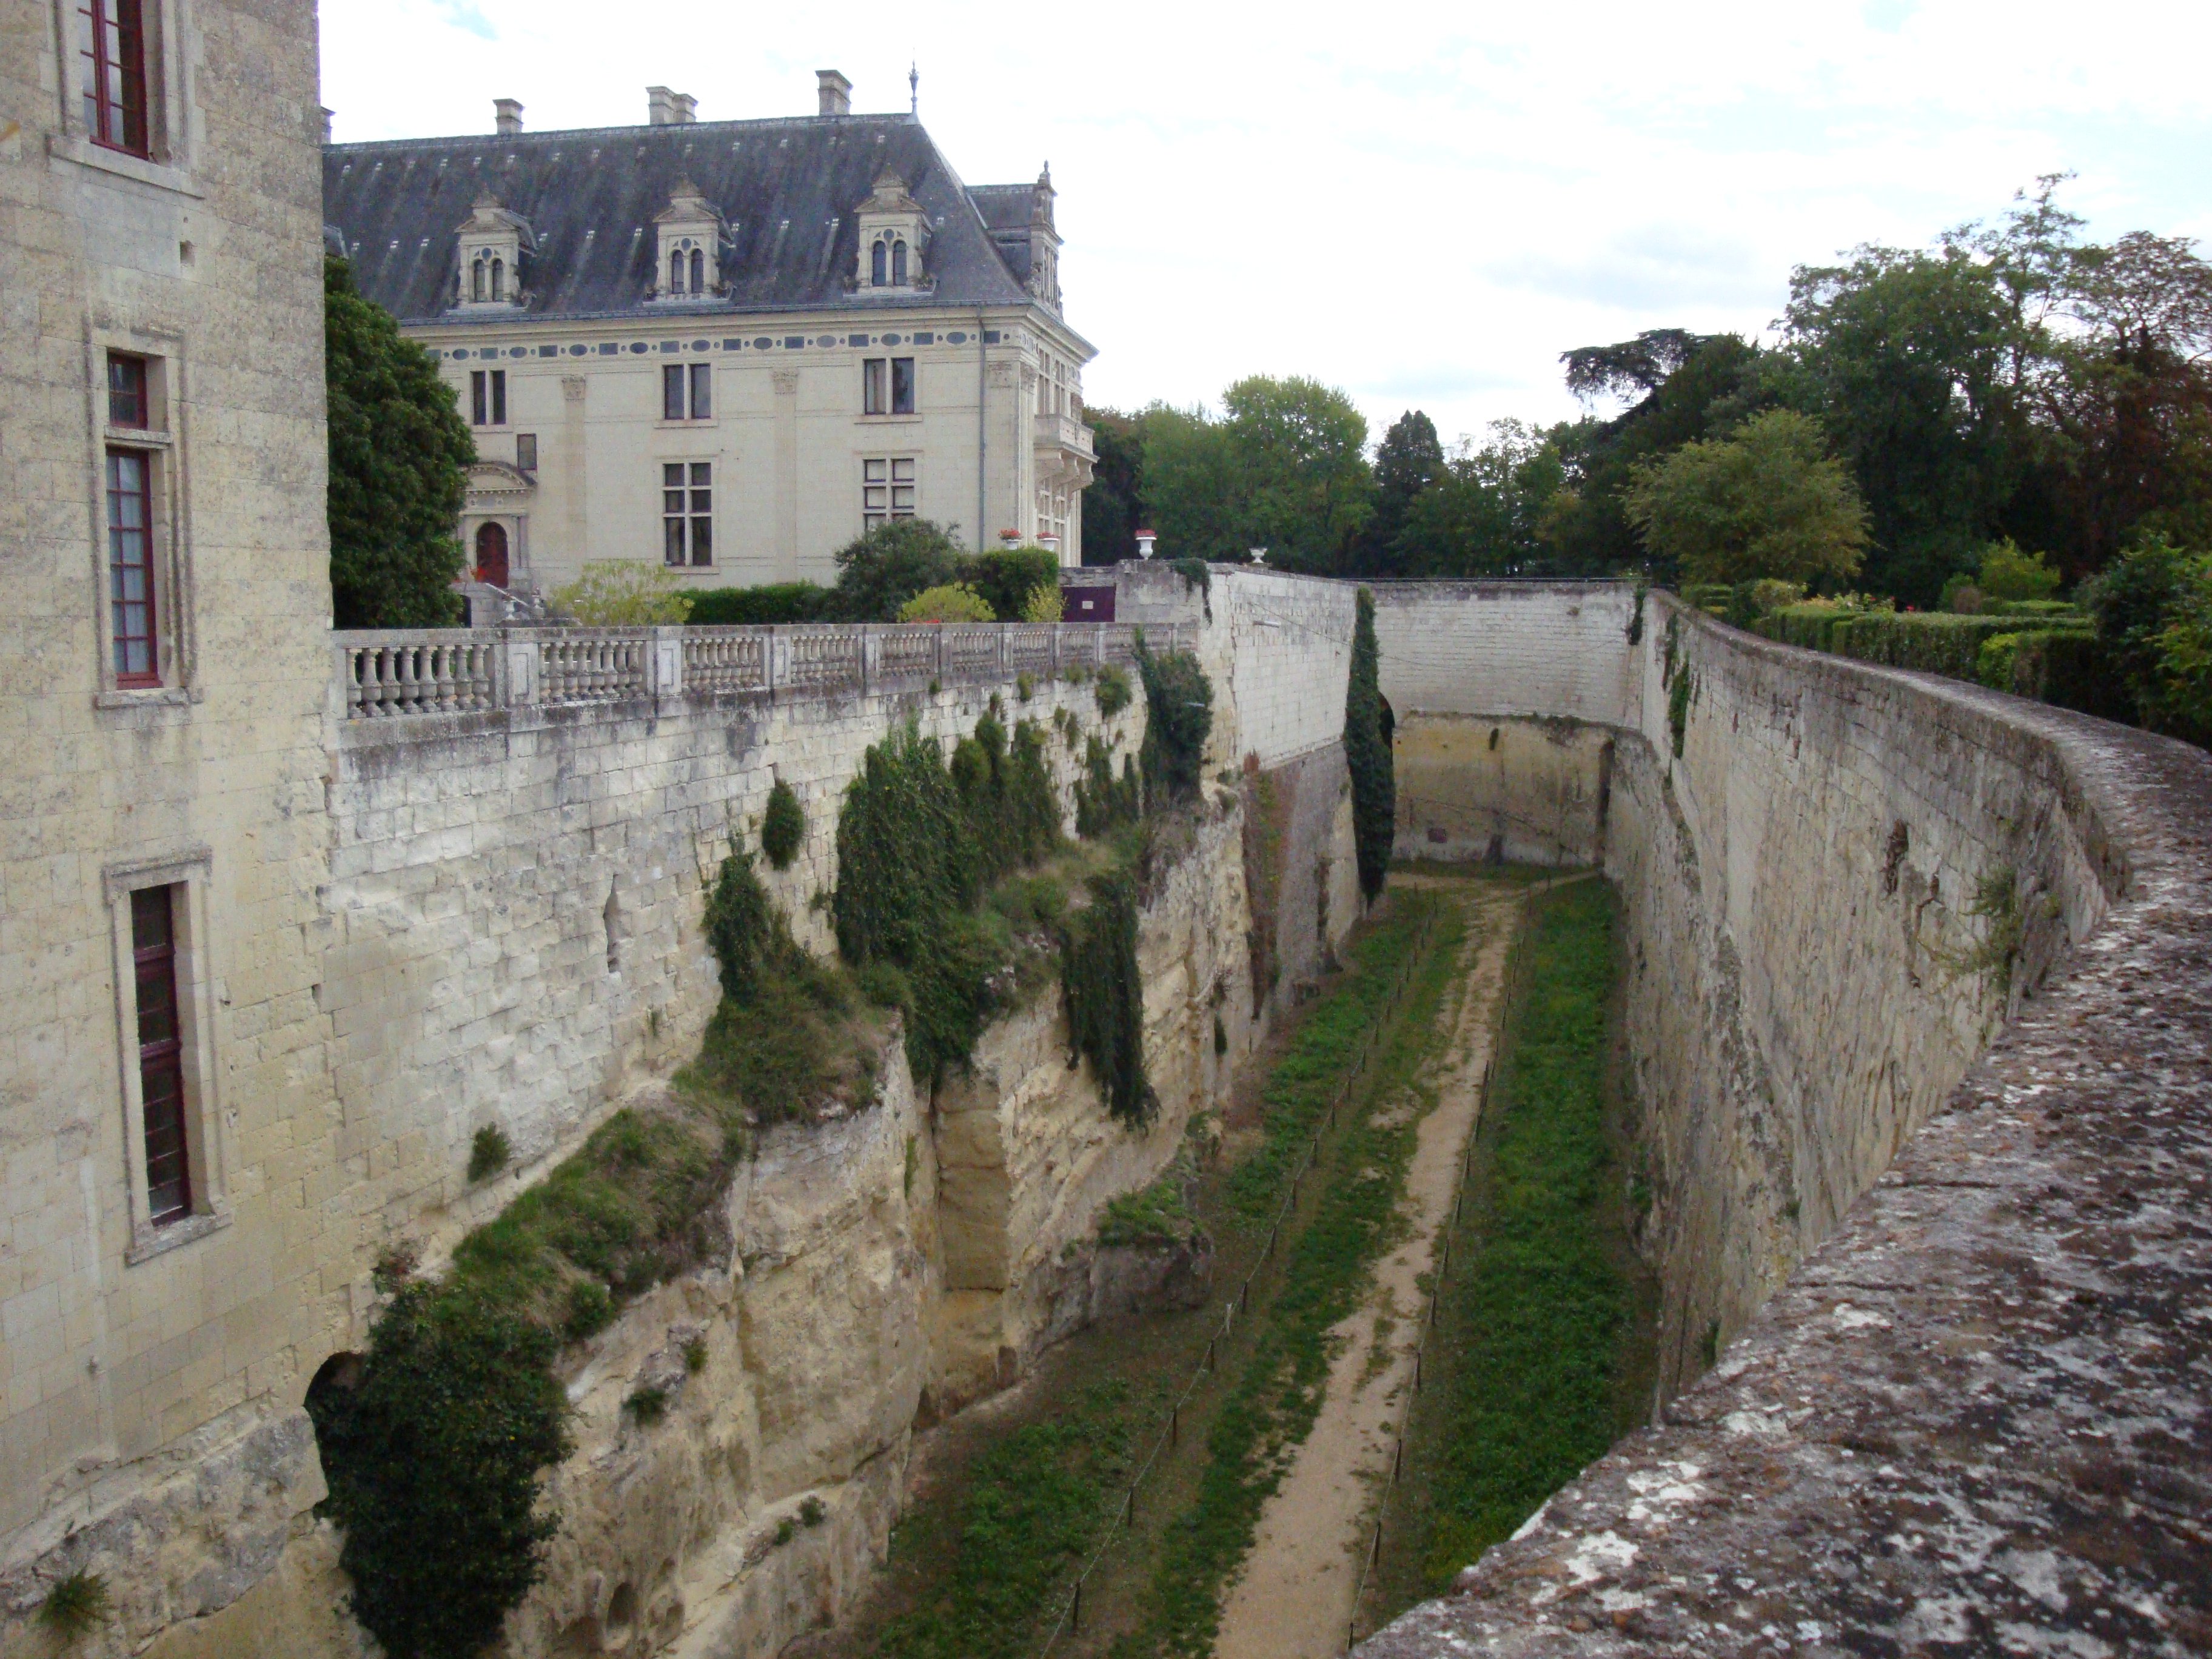 The underground fortress at Château de Brézé